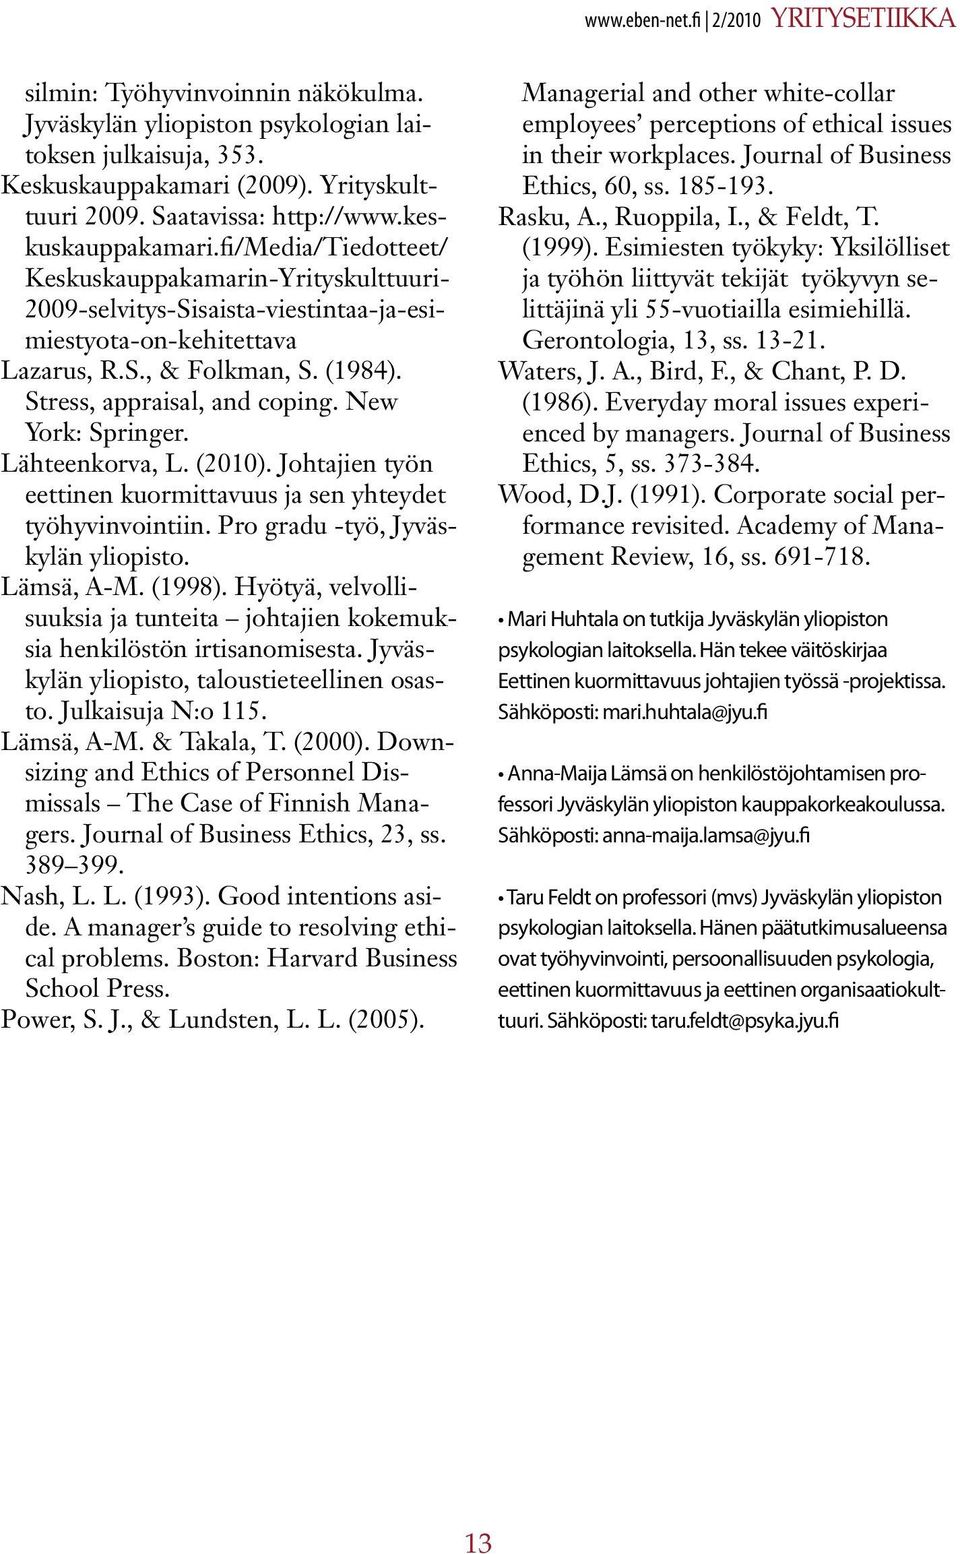 (1984). Stress, appraisal, and coping. New York: Springer. Lähteenkorva, L. (2010). Johtajien työn eettinen kuormittavuus ja sen yhteydet työhyvinvointiin. Pro gradu -työ, Jyväskylän yliopisto.